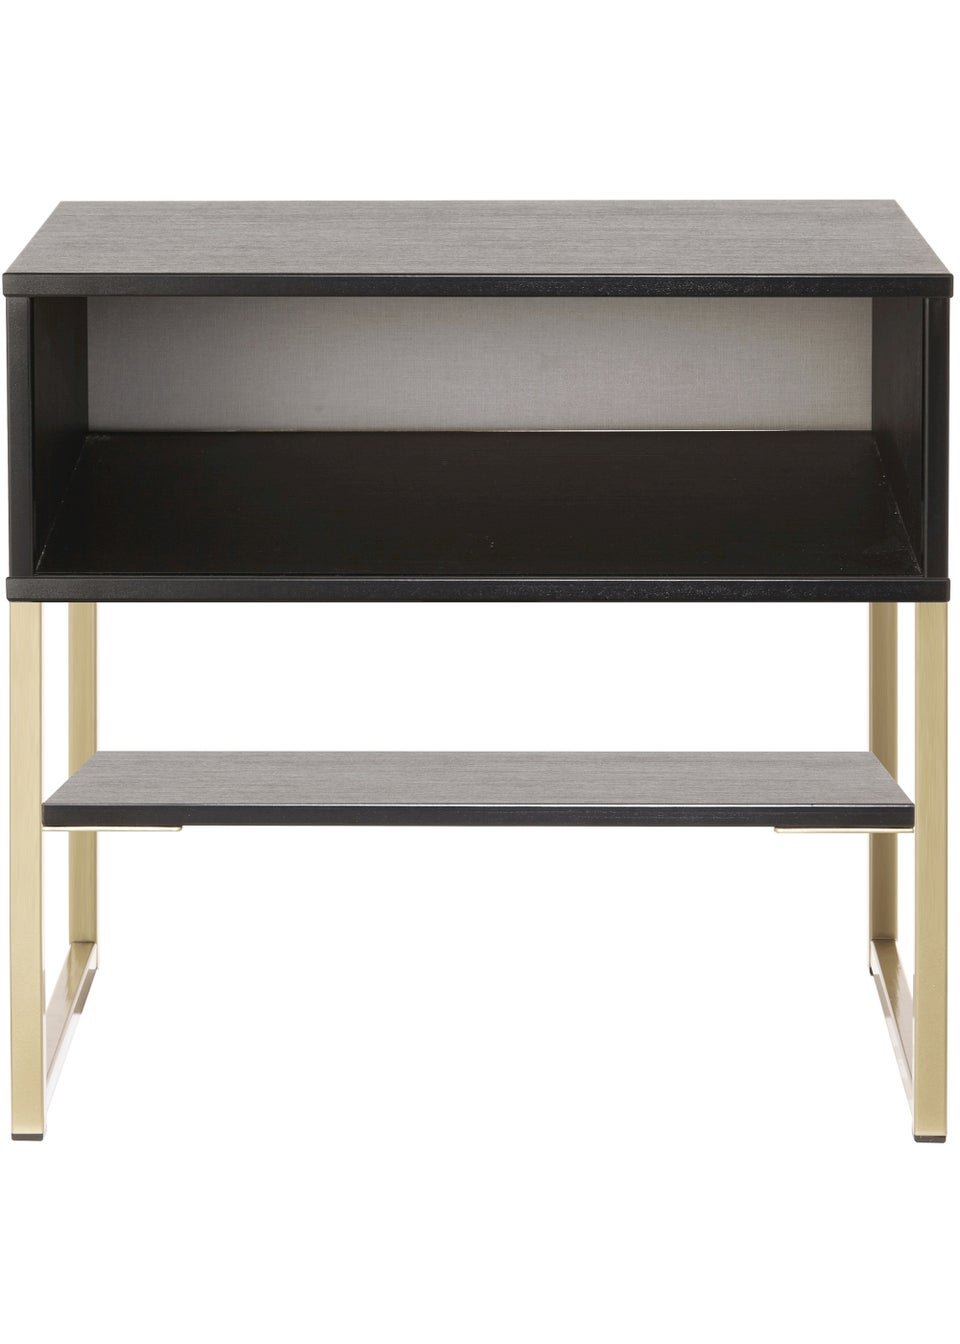 Swift Cordoba Single Open Bedside Cabinet (58cm x 39.5cm x 57.5cm)